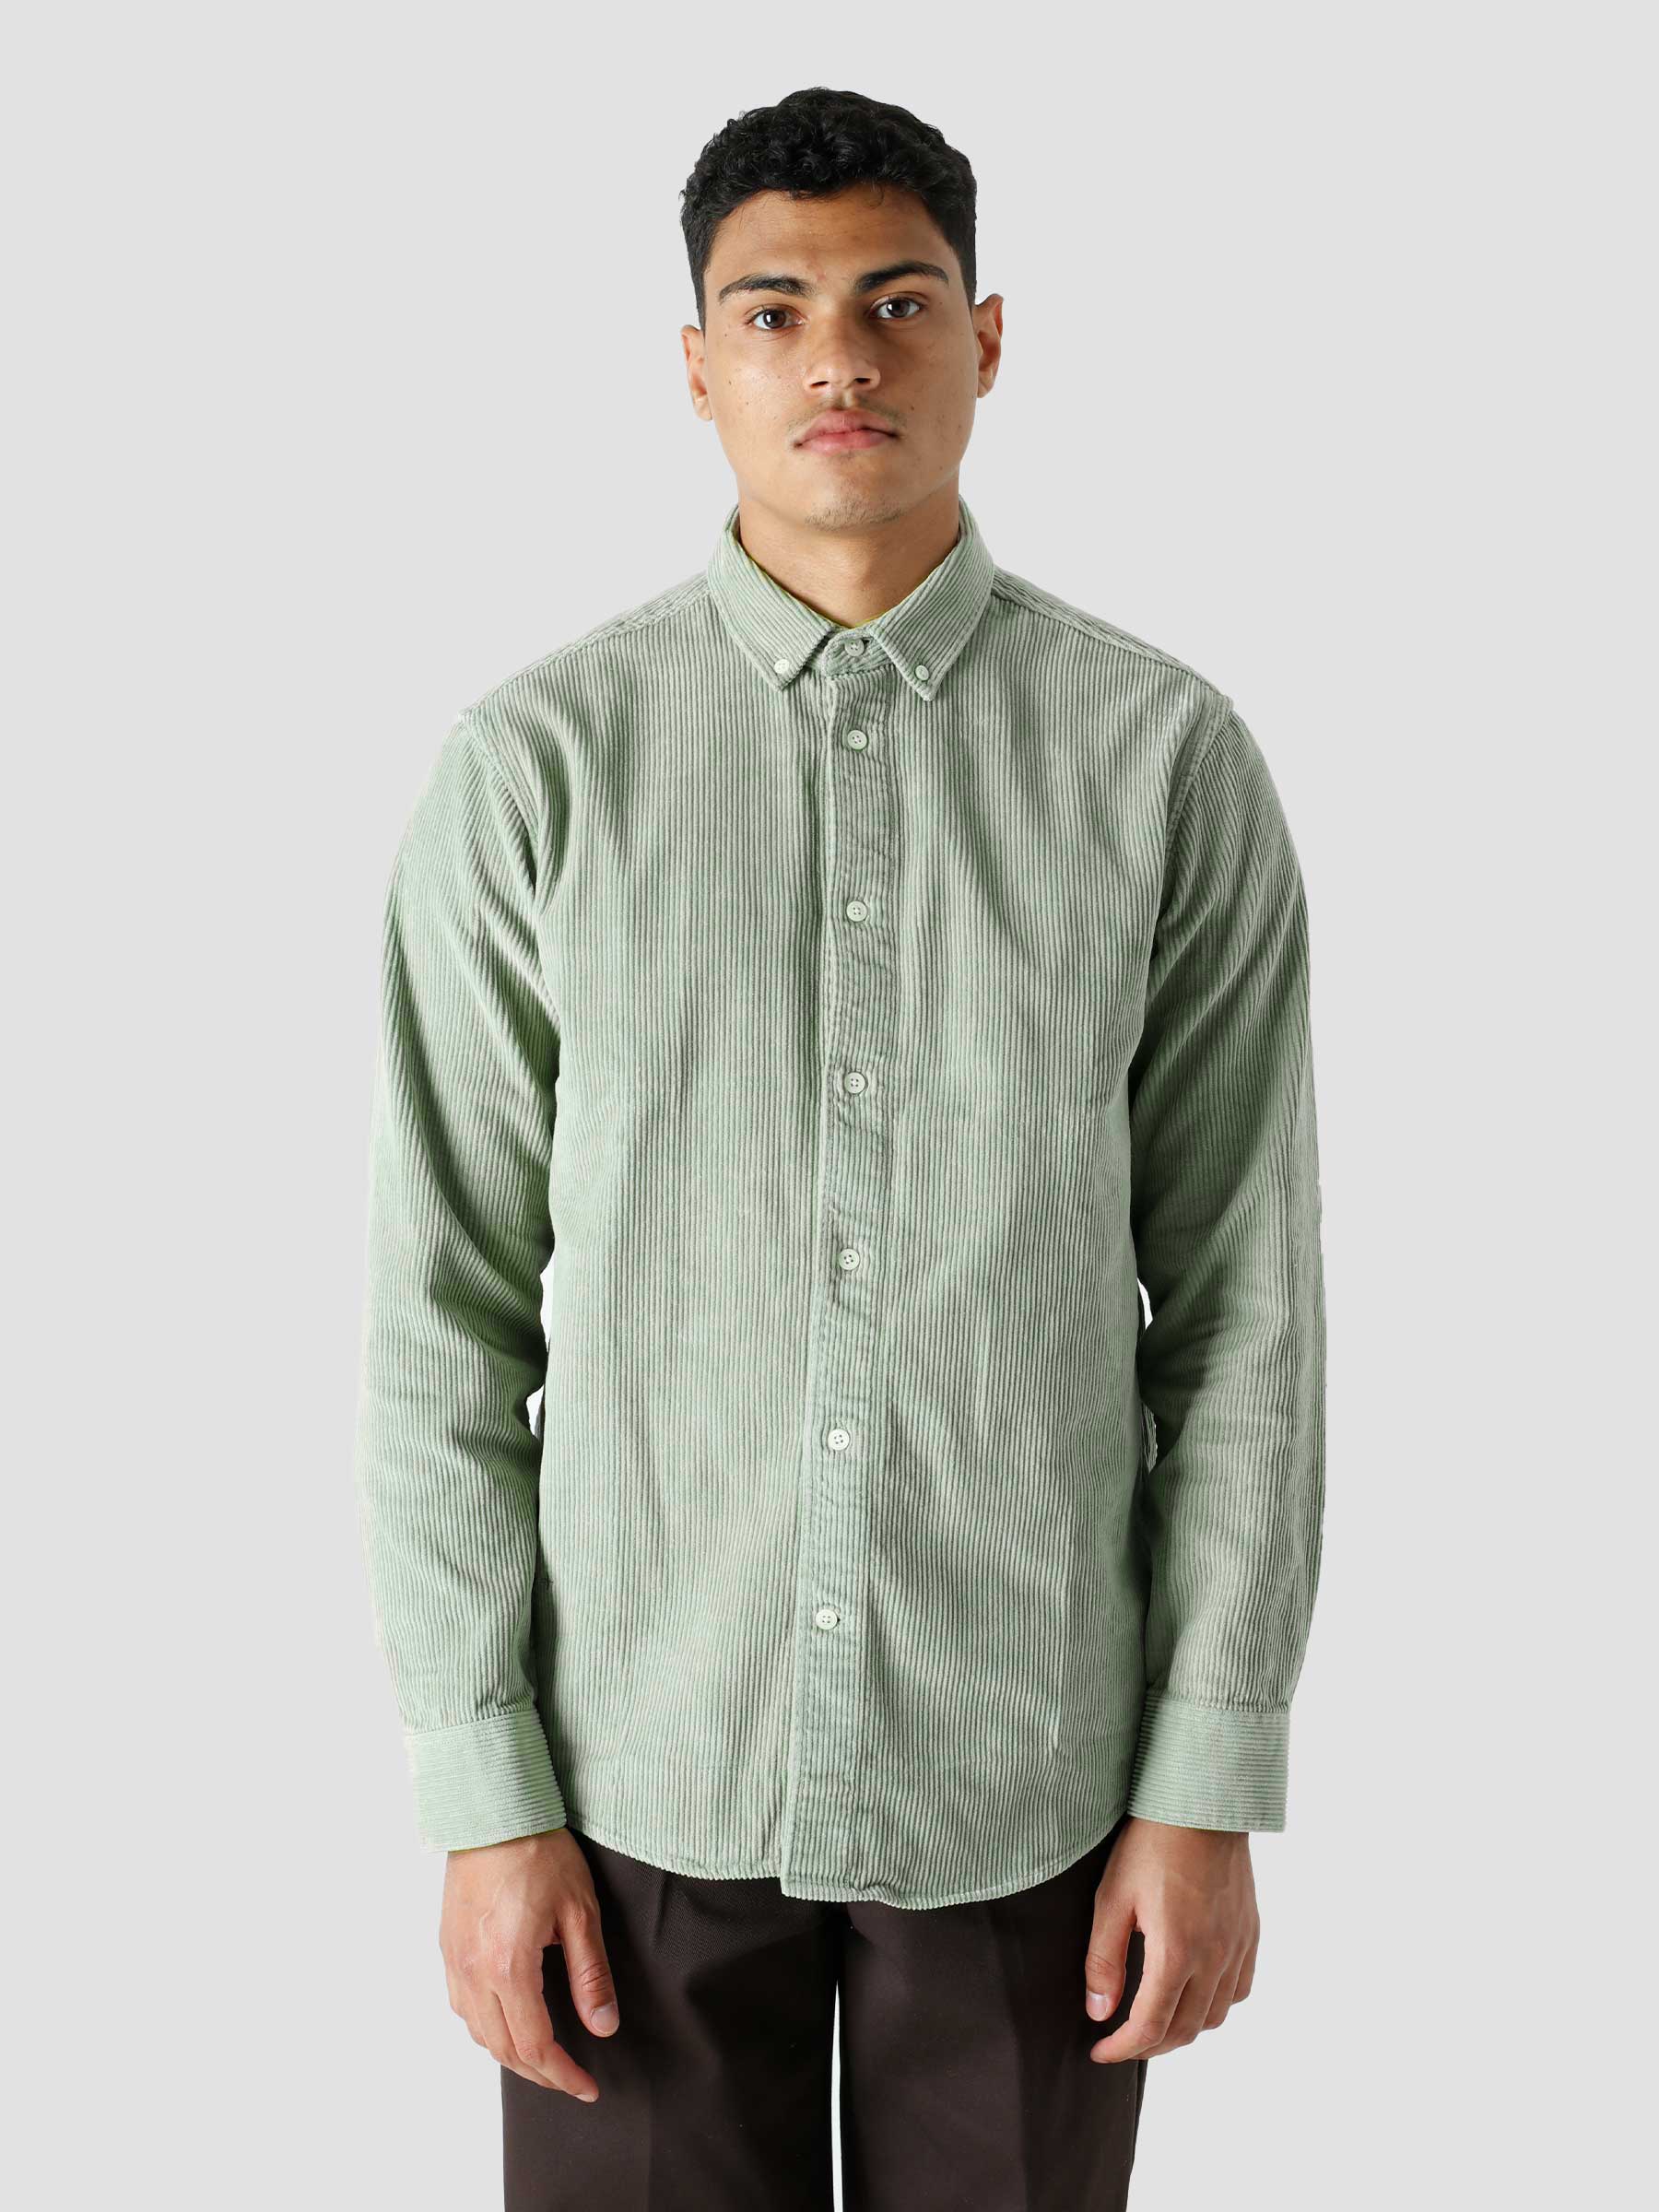 QB41 Cord Shirt Celadon Green